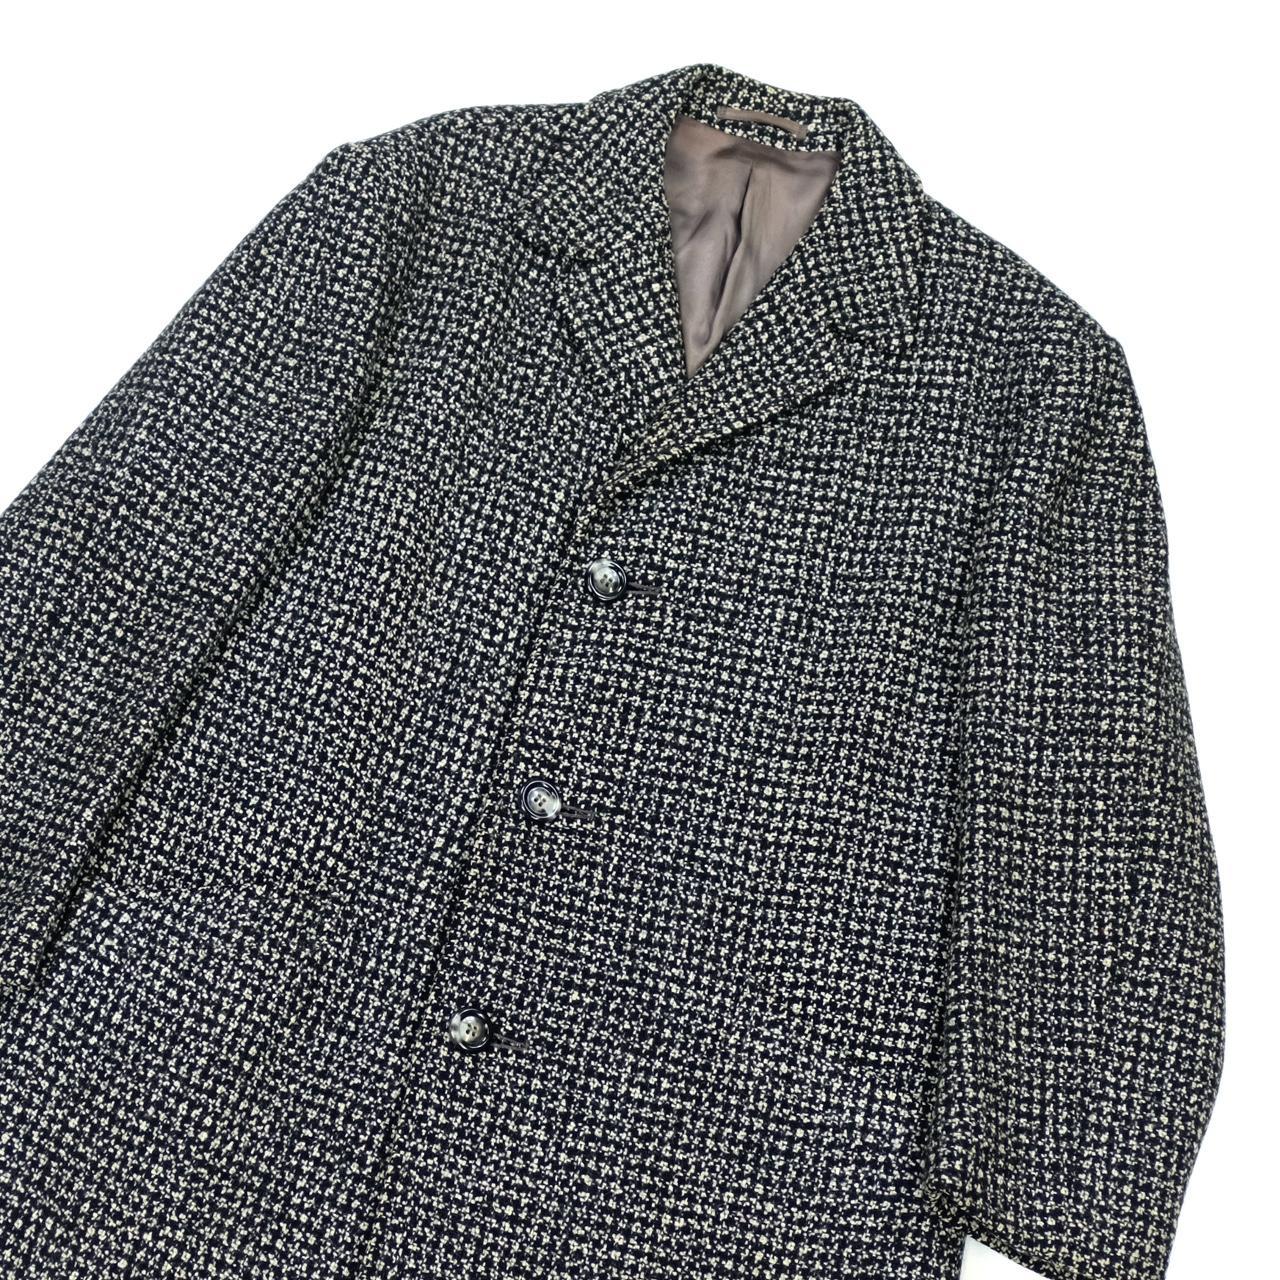 Original 1960s Tweed coat